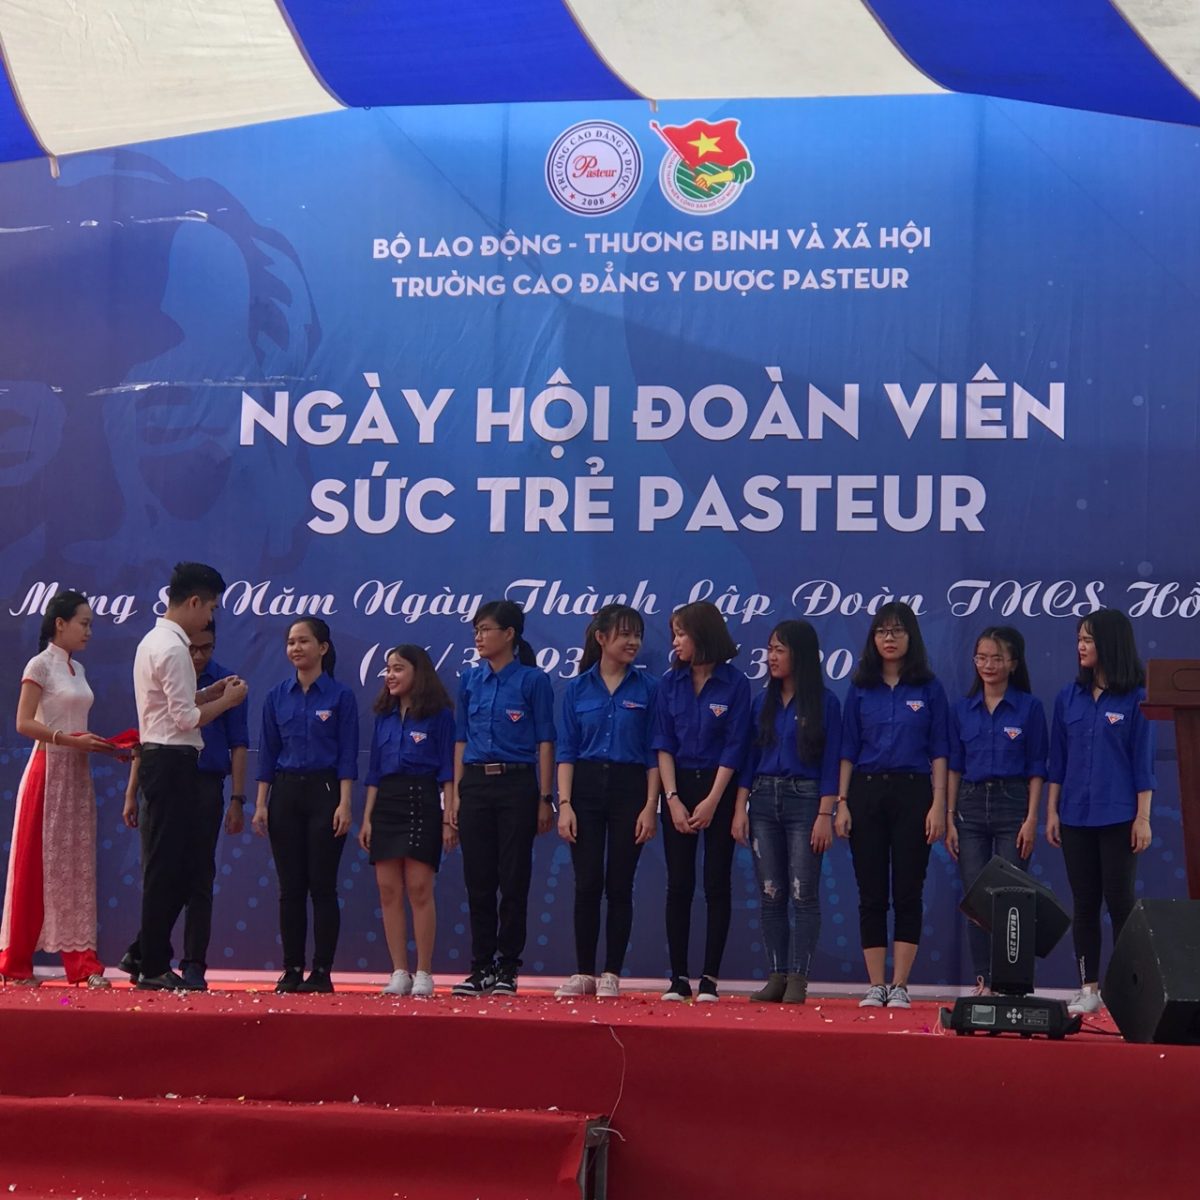 Trường Cao đẳng Y Dược Pasteur long trọng tổ chức lễ mít tinh kỷ niệm 87 năm thành lập Đoàn TNCS Hồ Chí Minh